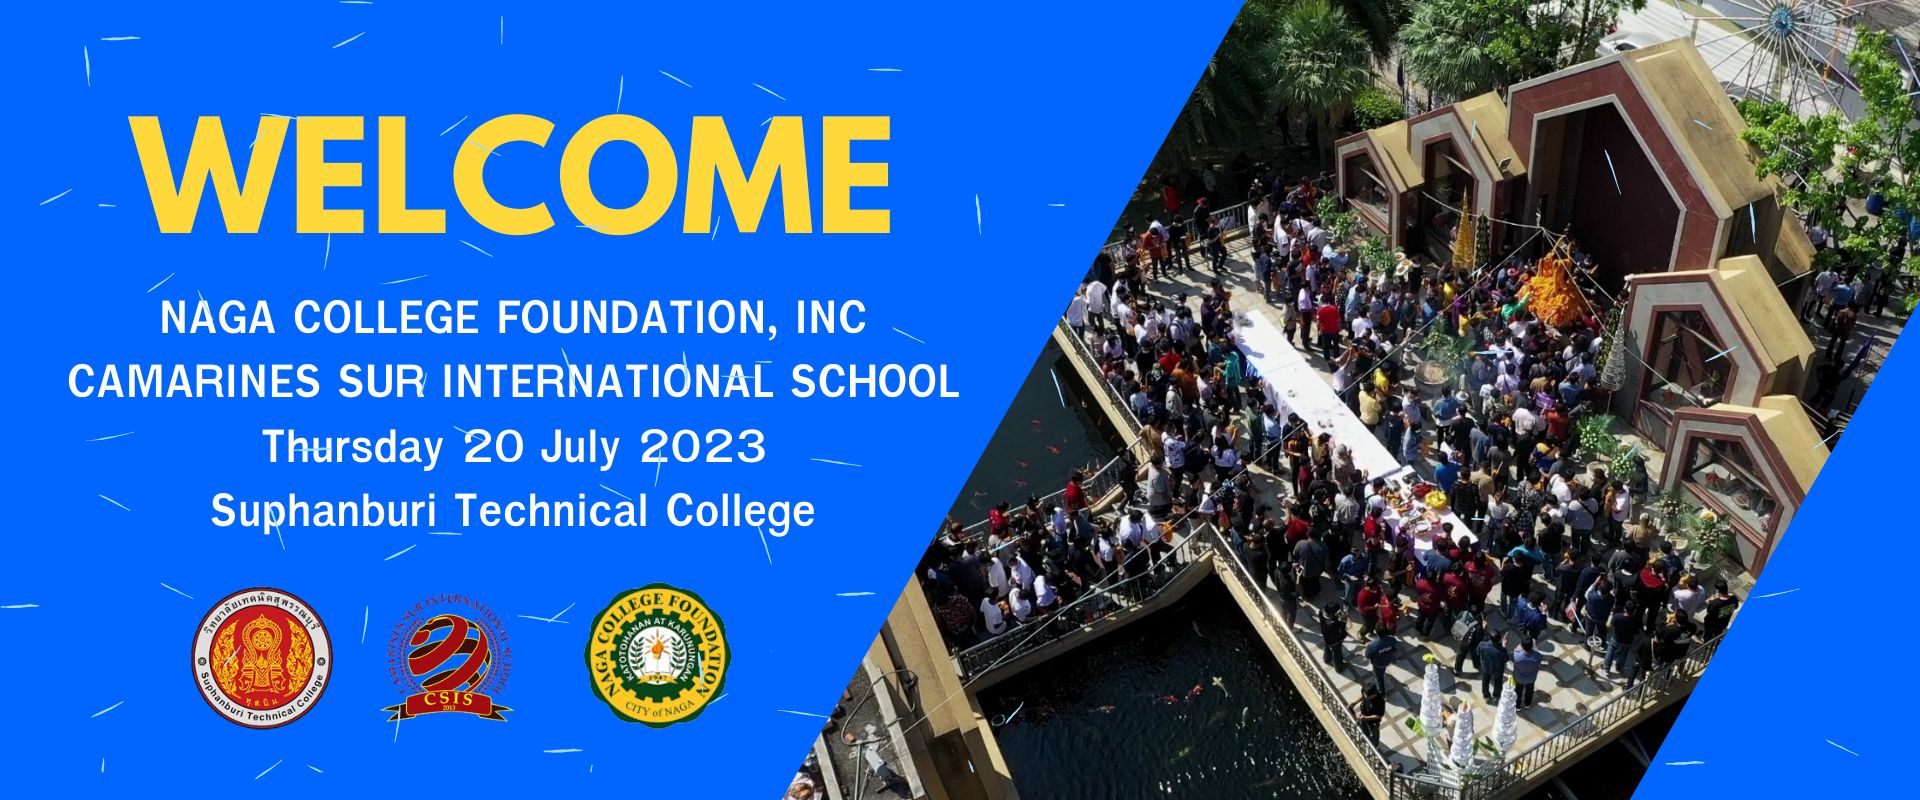 ต้อนรับคณะจากมูลนิธิวิทยาลัย NAGA และ โรงเรียนนานาชาติ CAMARINES SUR ประเทศฟิลิปปินส์